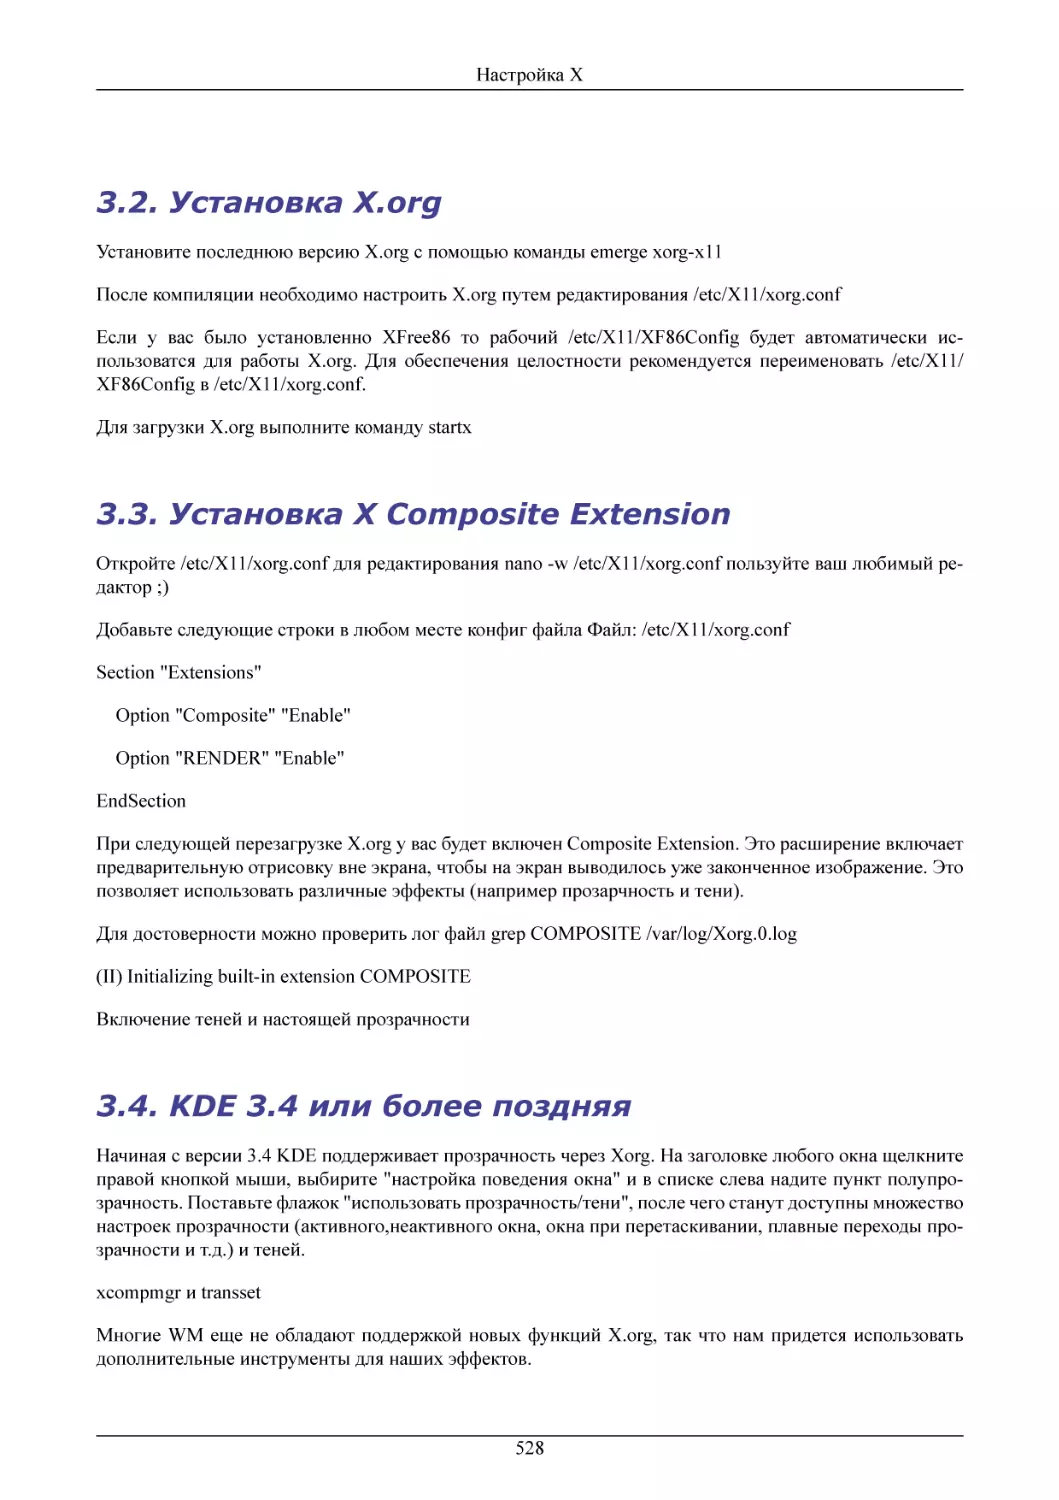 Установка X.org
Установка X Composite Extension
KDE 3.4 или более поздняя